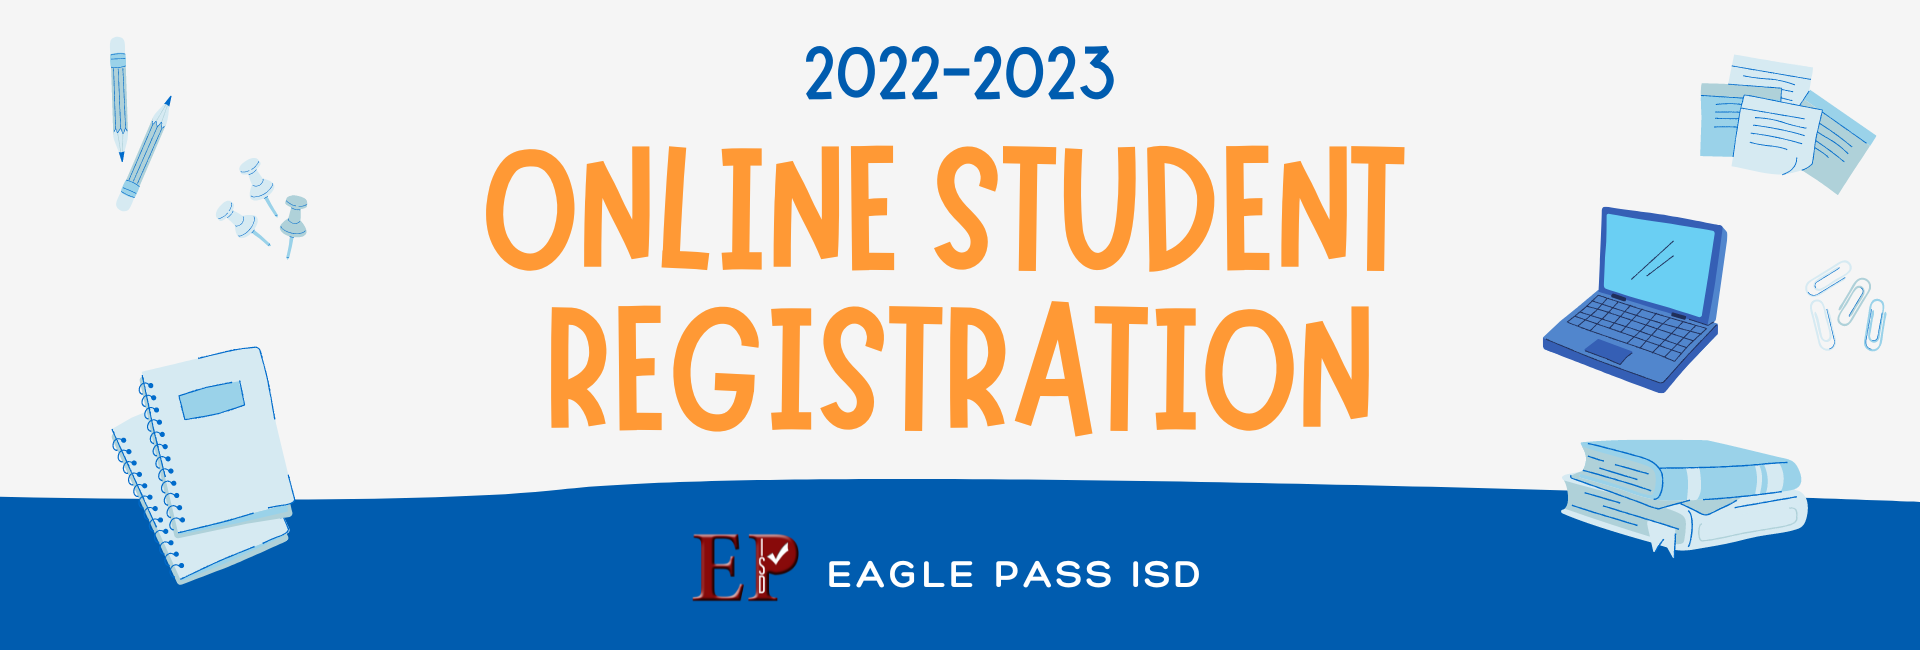 Online Student registration banner